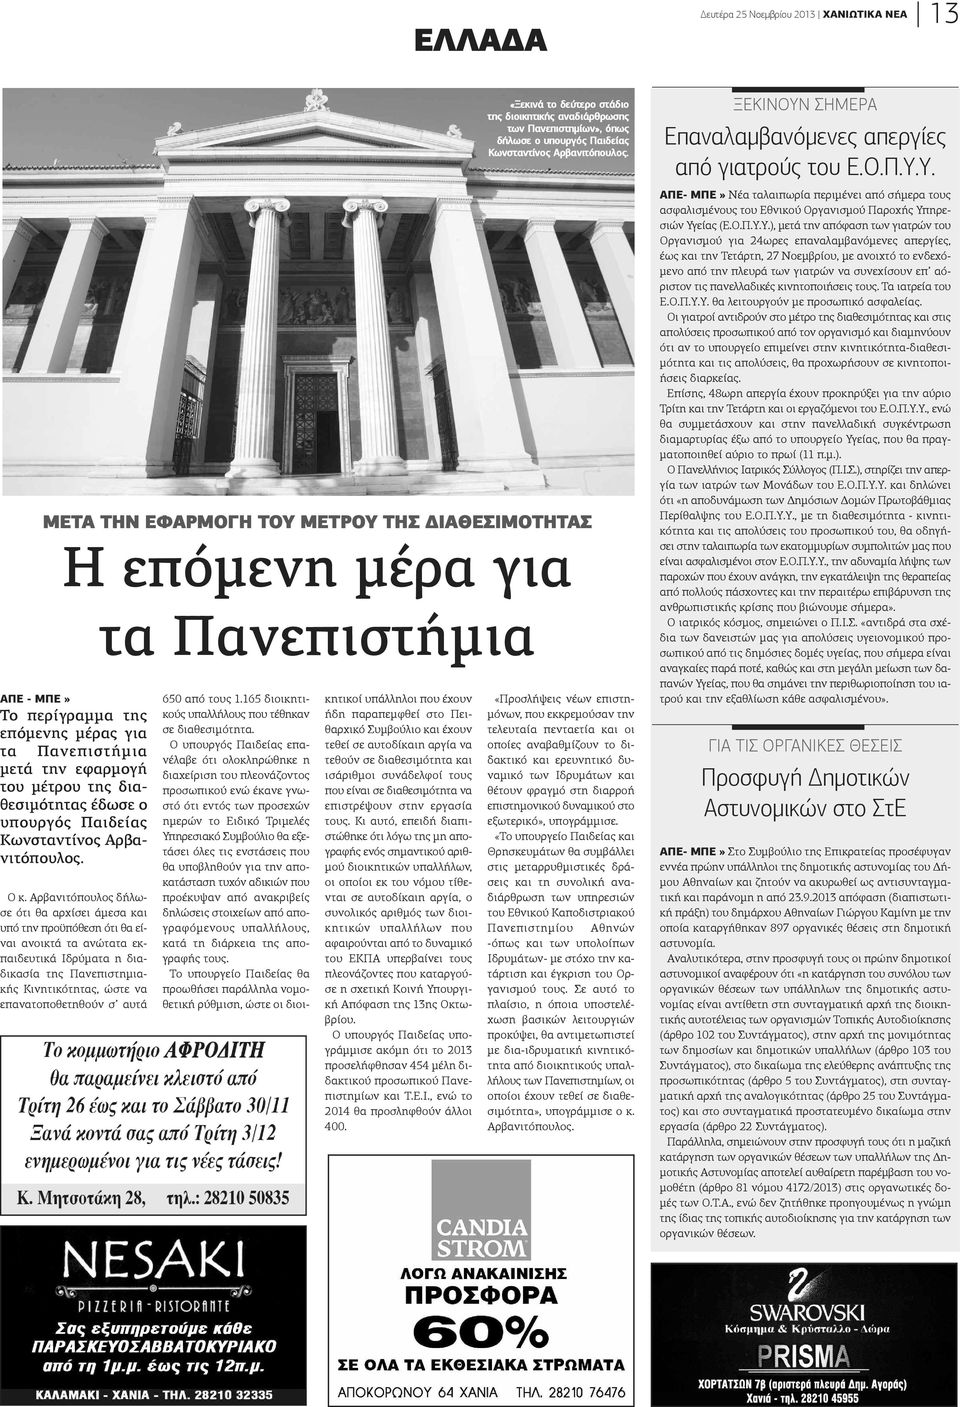 Αρβανιτόπουλος δήλωσε ότι θα αρχίσει άμεσα και υπό την προϋπόθεση ότι θα είναι ανοικτά τα ανώτατα εκπαιδευτικά Ιδρύματα η διαδικασία της Πανεπιστημιακής Κινητικότητας, ώστε να επανατοποθετηθούν σ